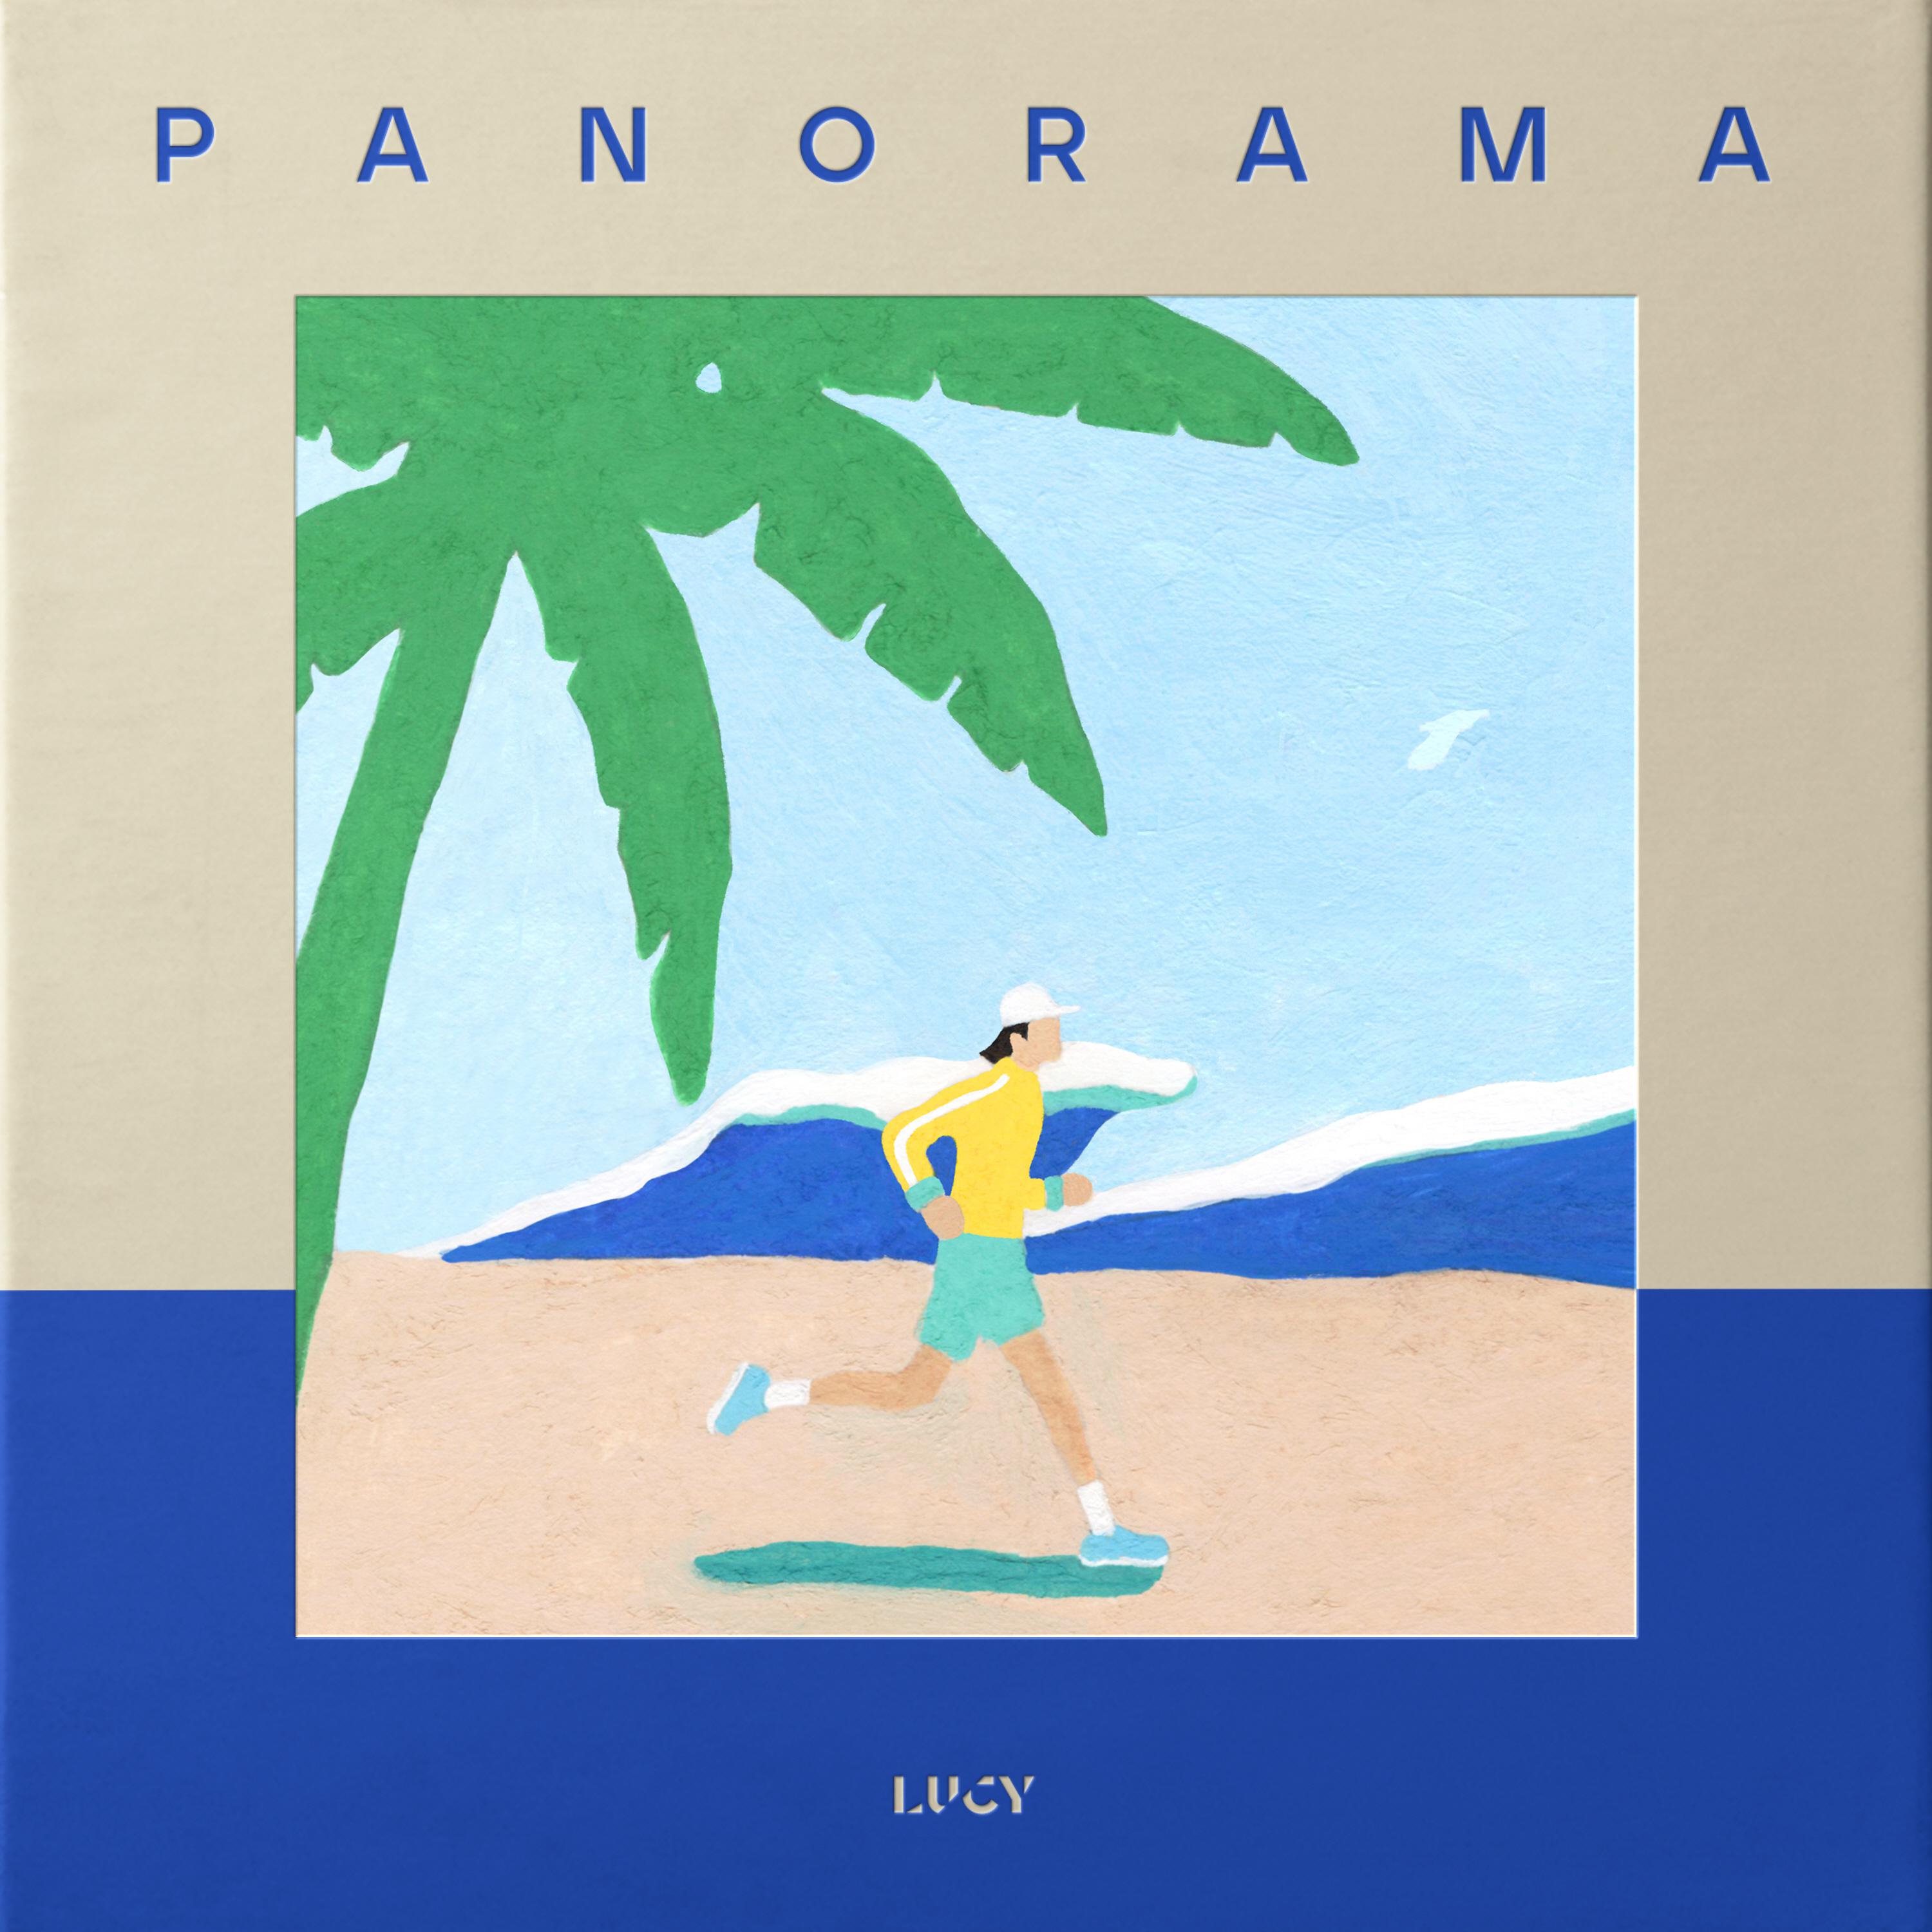 충분히歌词 歌手LUCY-专辑PANORAMA-单曲《충분히》LRC歌词下载